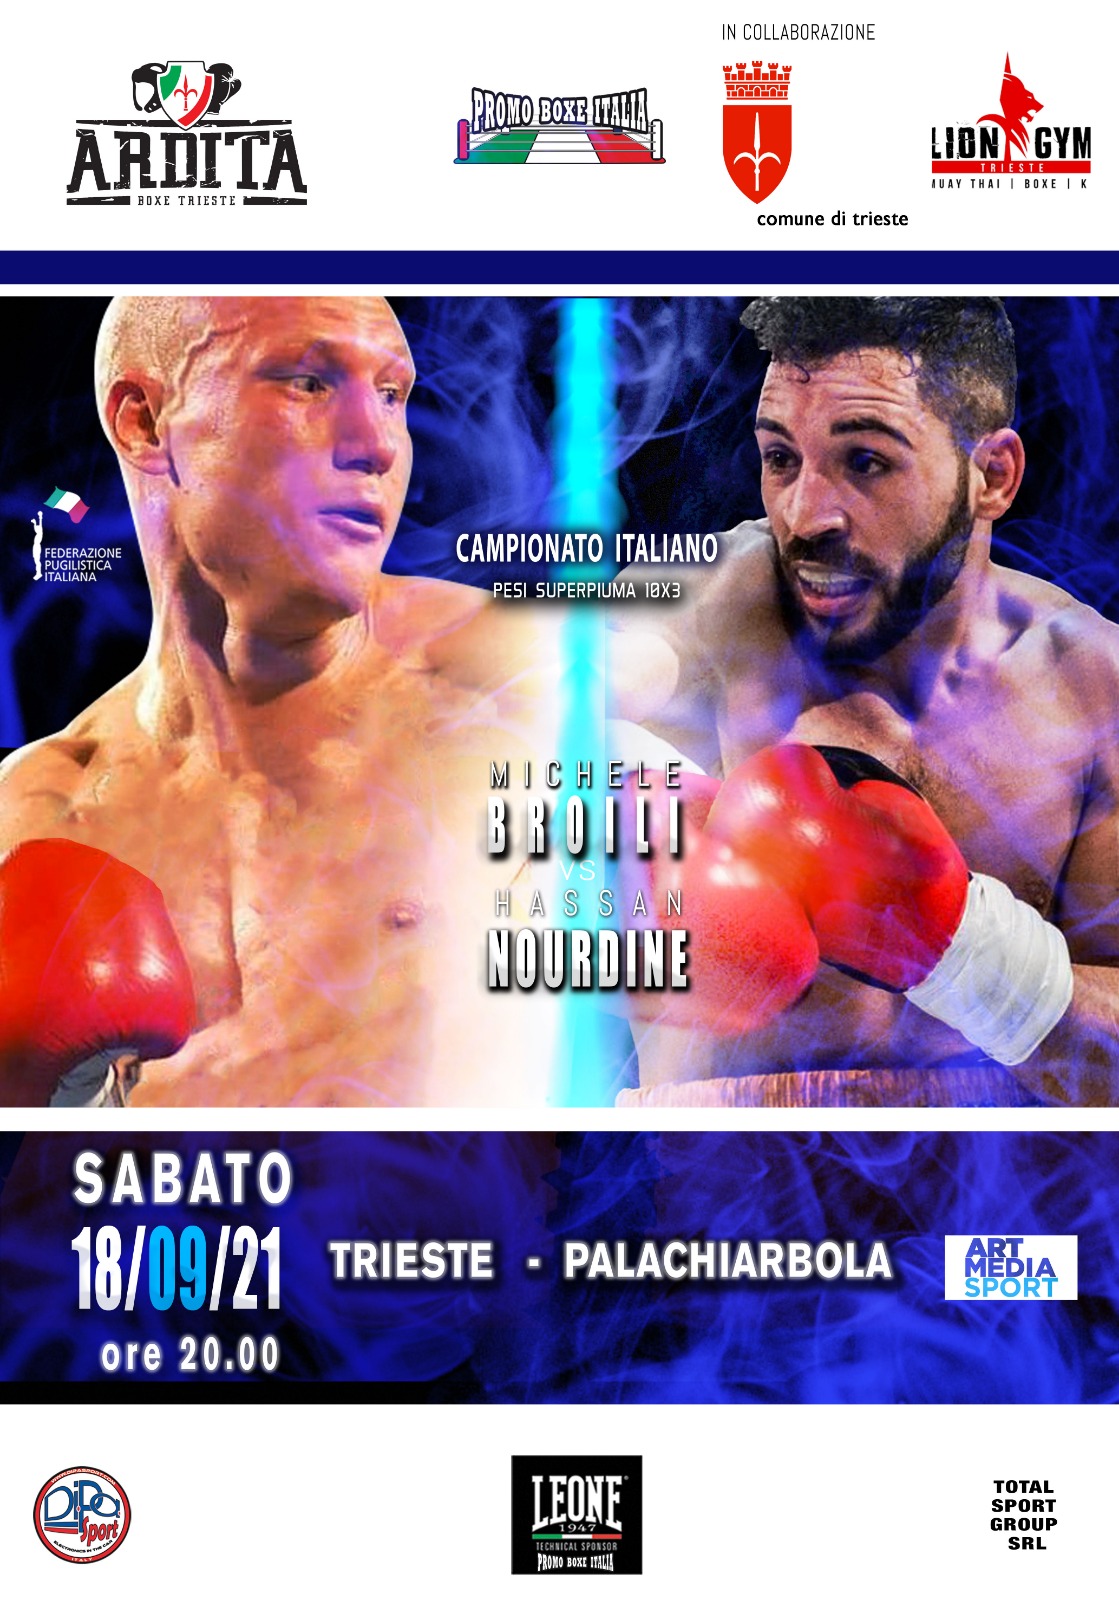 Il programma completo della grande serata PROMO Boxe Italia del 18 settembre a Trieste 